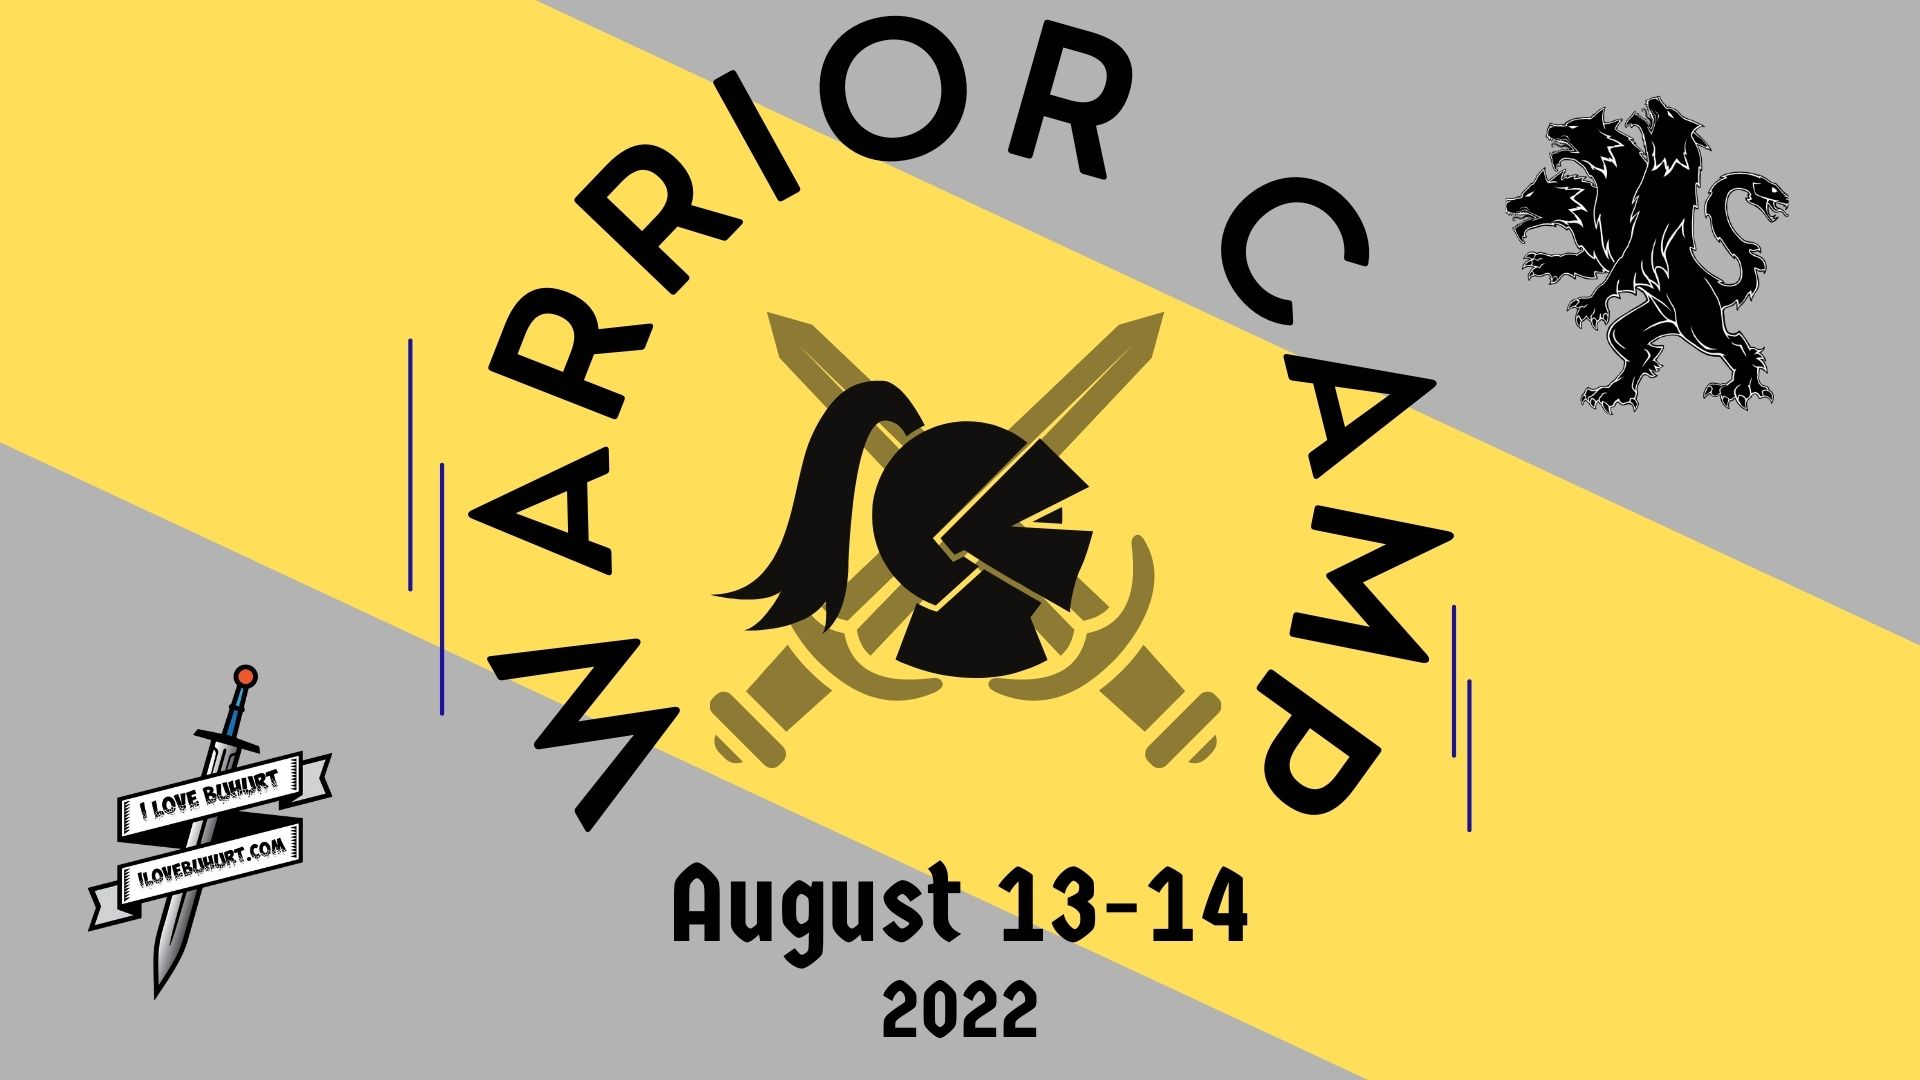 New warrior camp banner